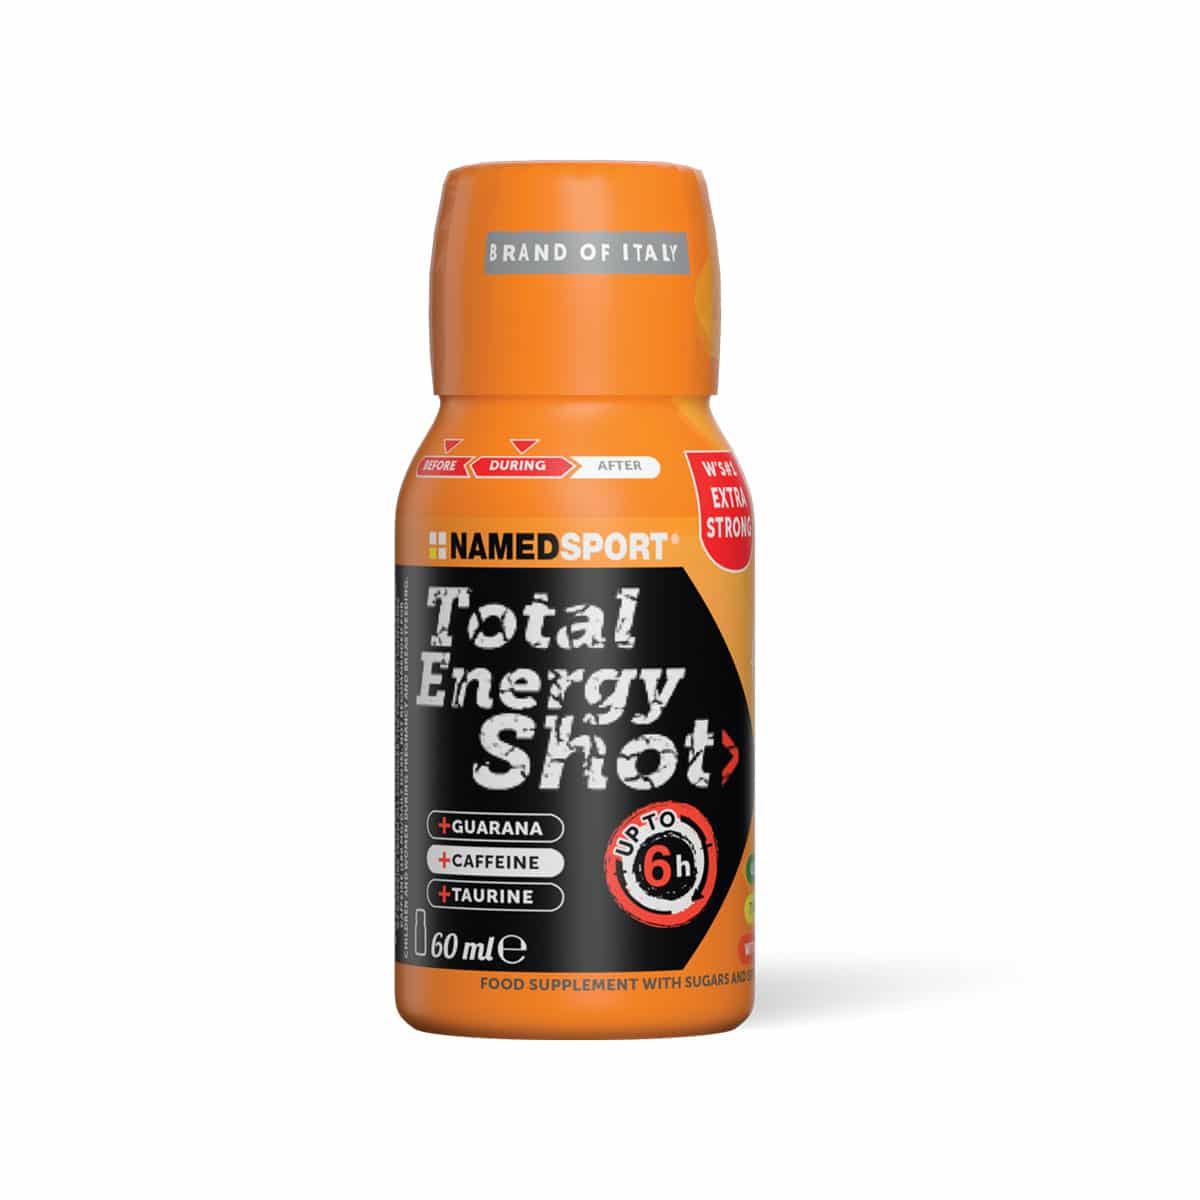 NamedSport Total Energy Shot - 60ml